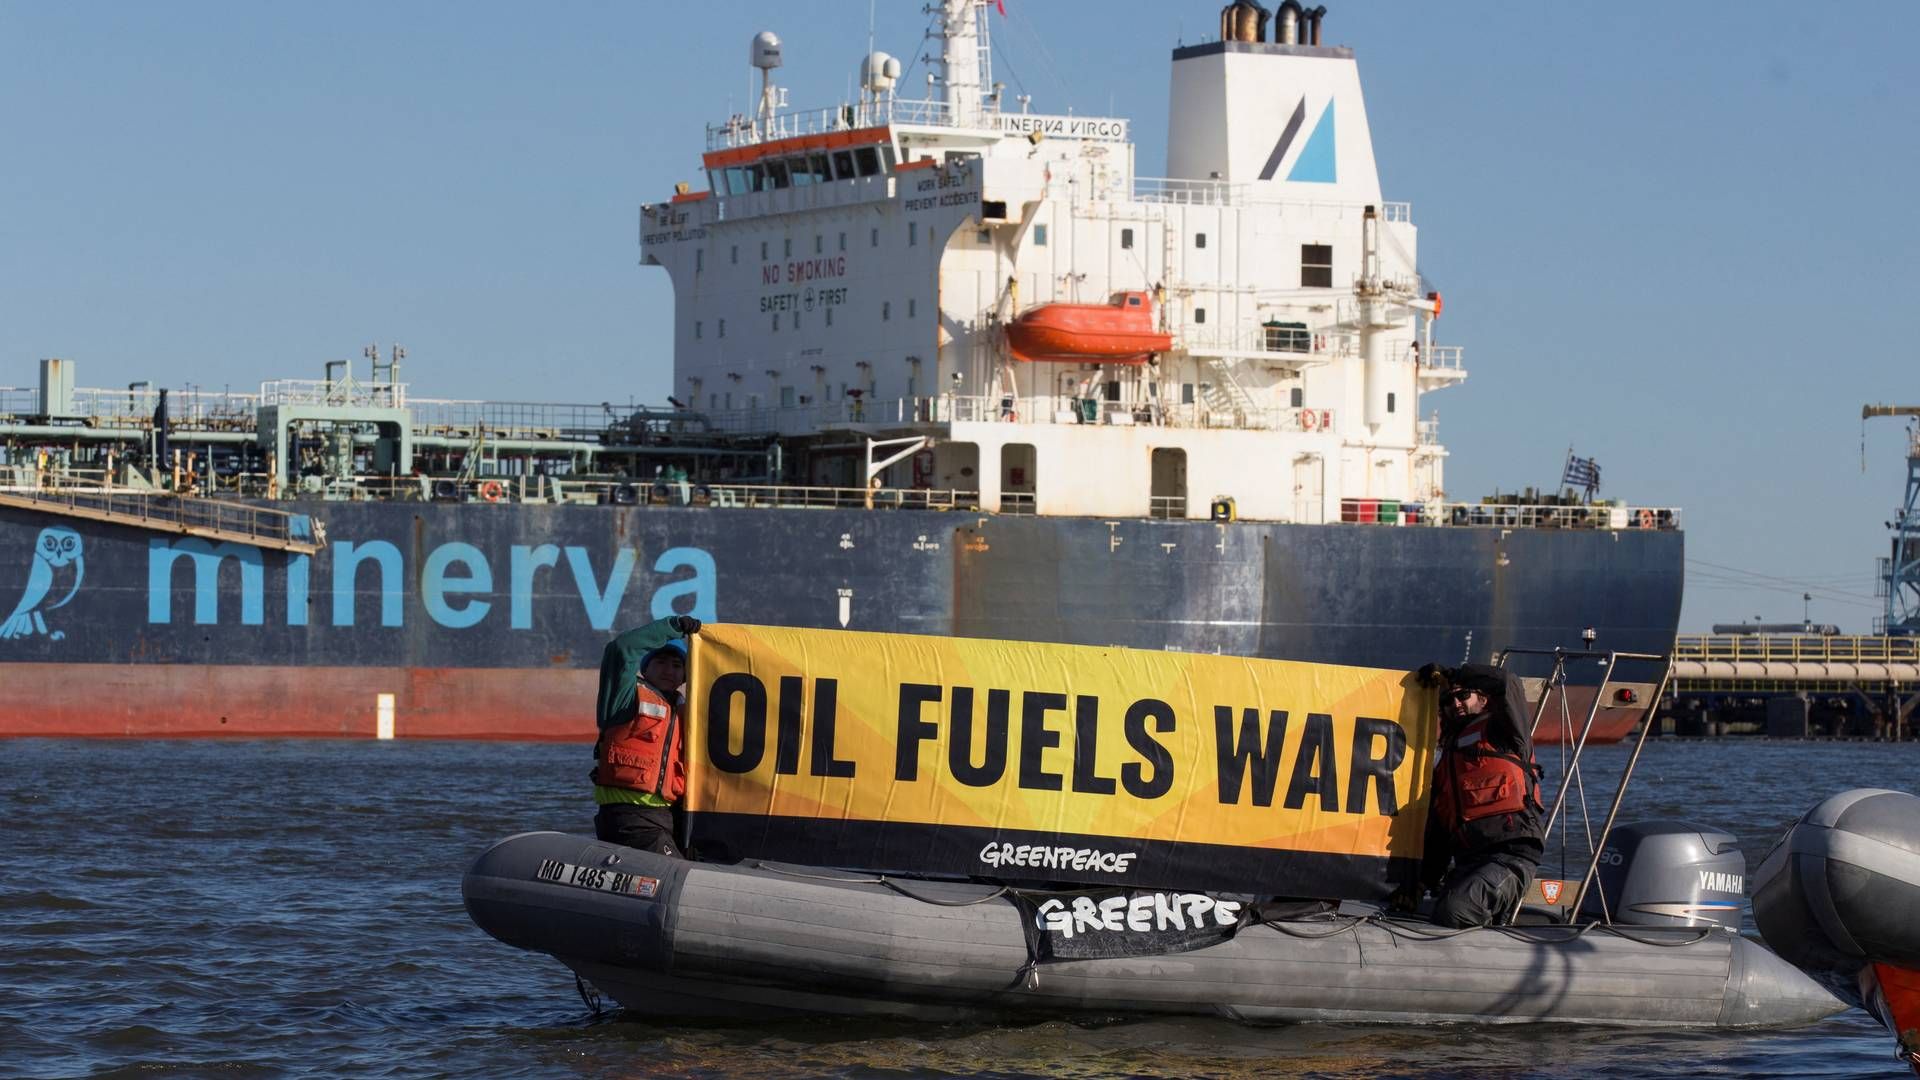 Med ordene "Oil fuels war" ønsker organisationen Greenpeace at protestere imod Ruslands salg af olie til EU-landene. Her er det nær et tankskib i New Jersey. | Foto: Bjoern Kils/Reuters/Ritzau Scanpix